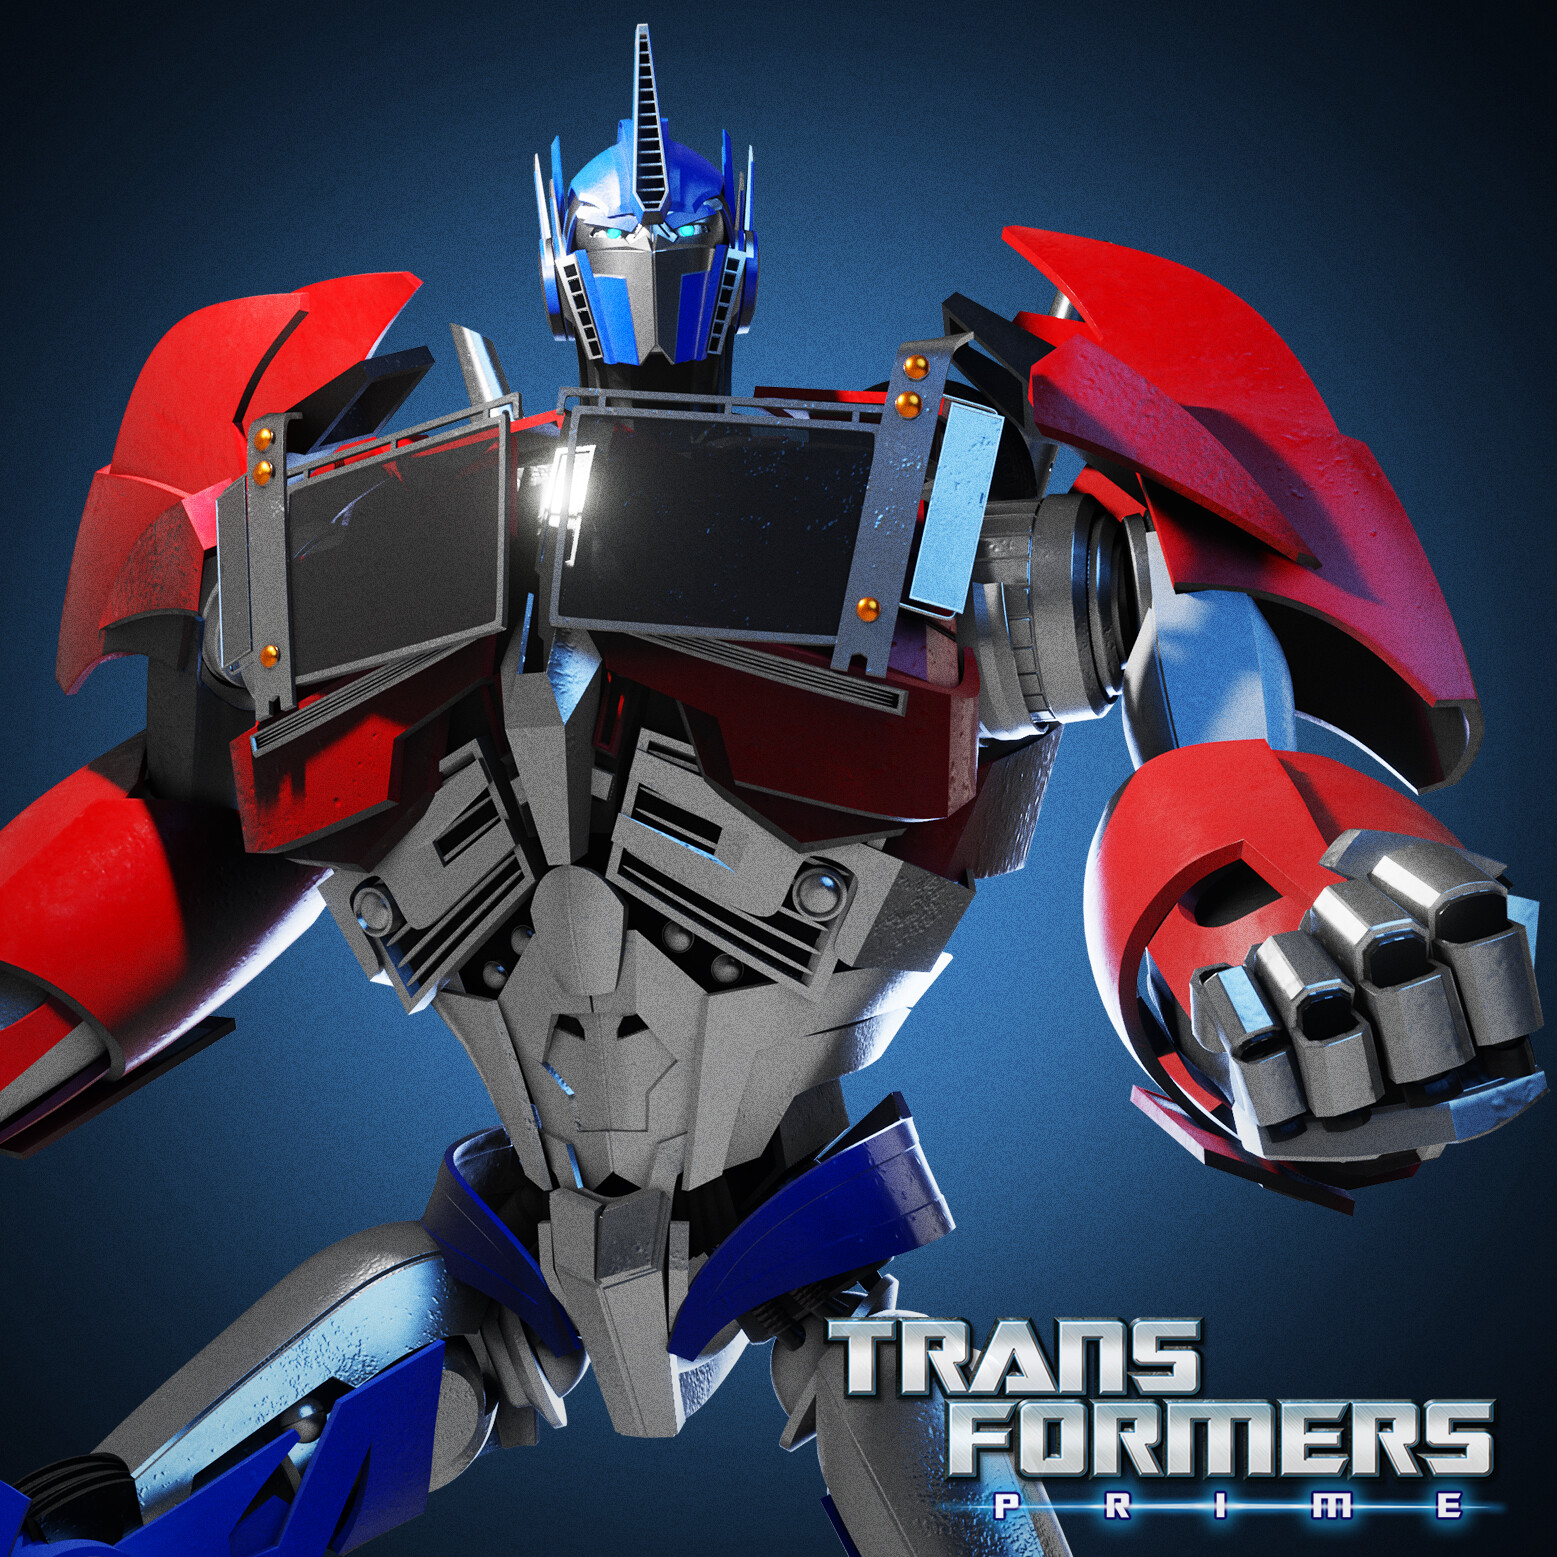 Optimus Prime - Transformers Prime action figure